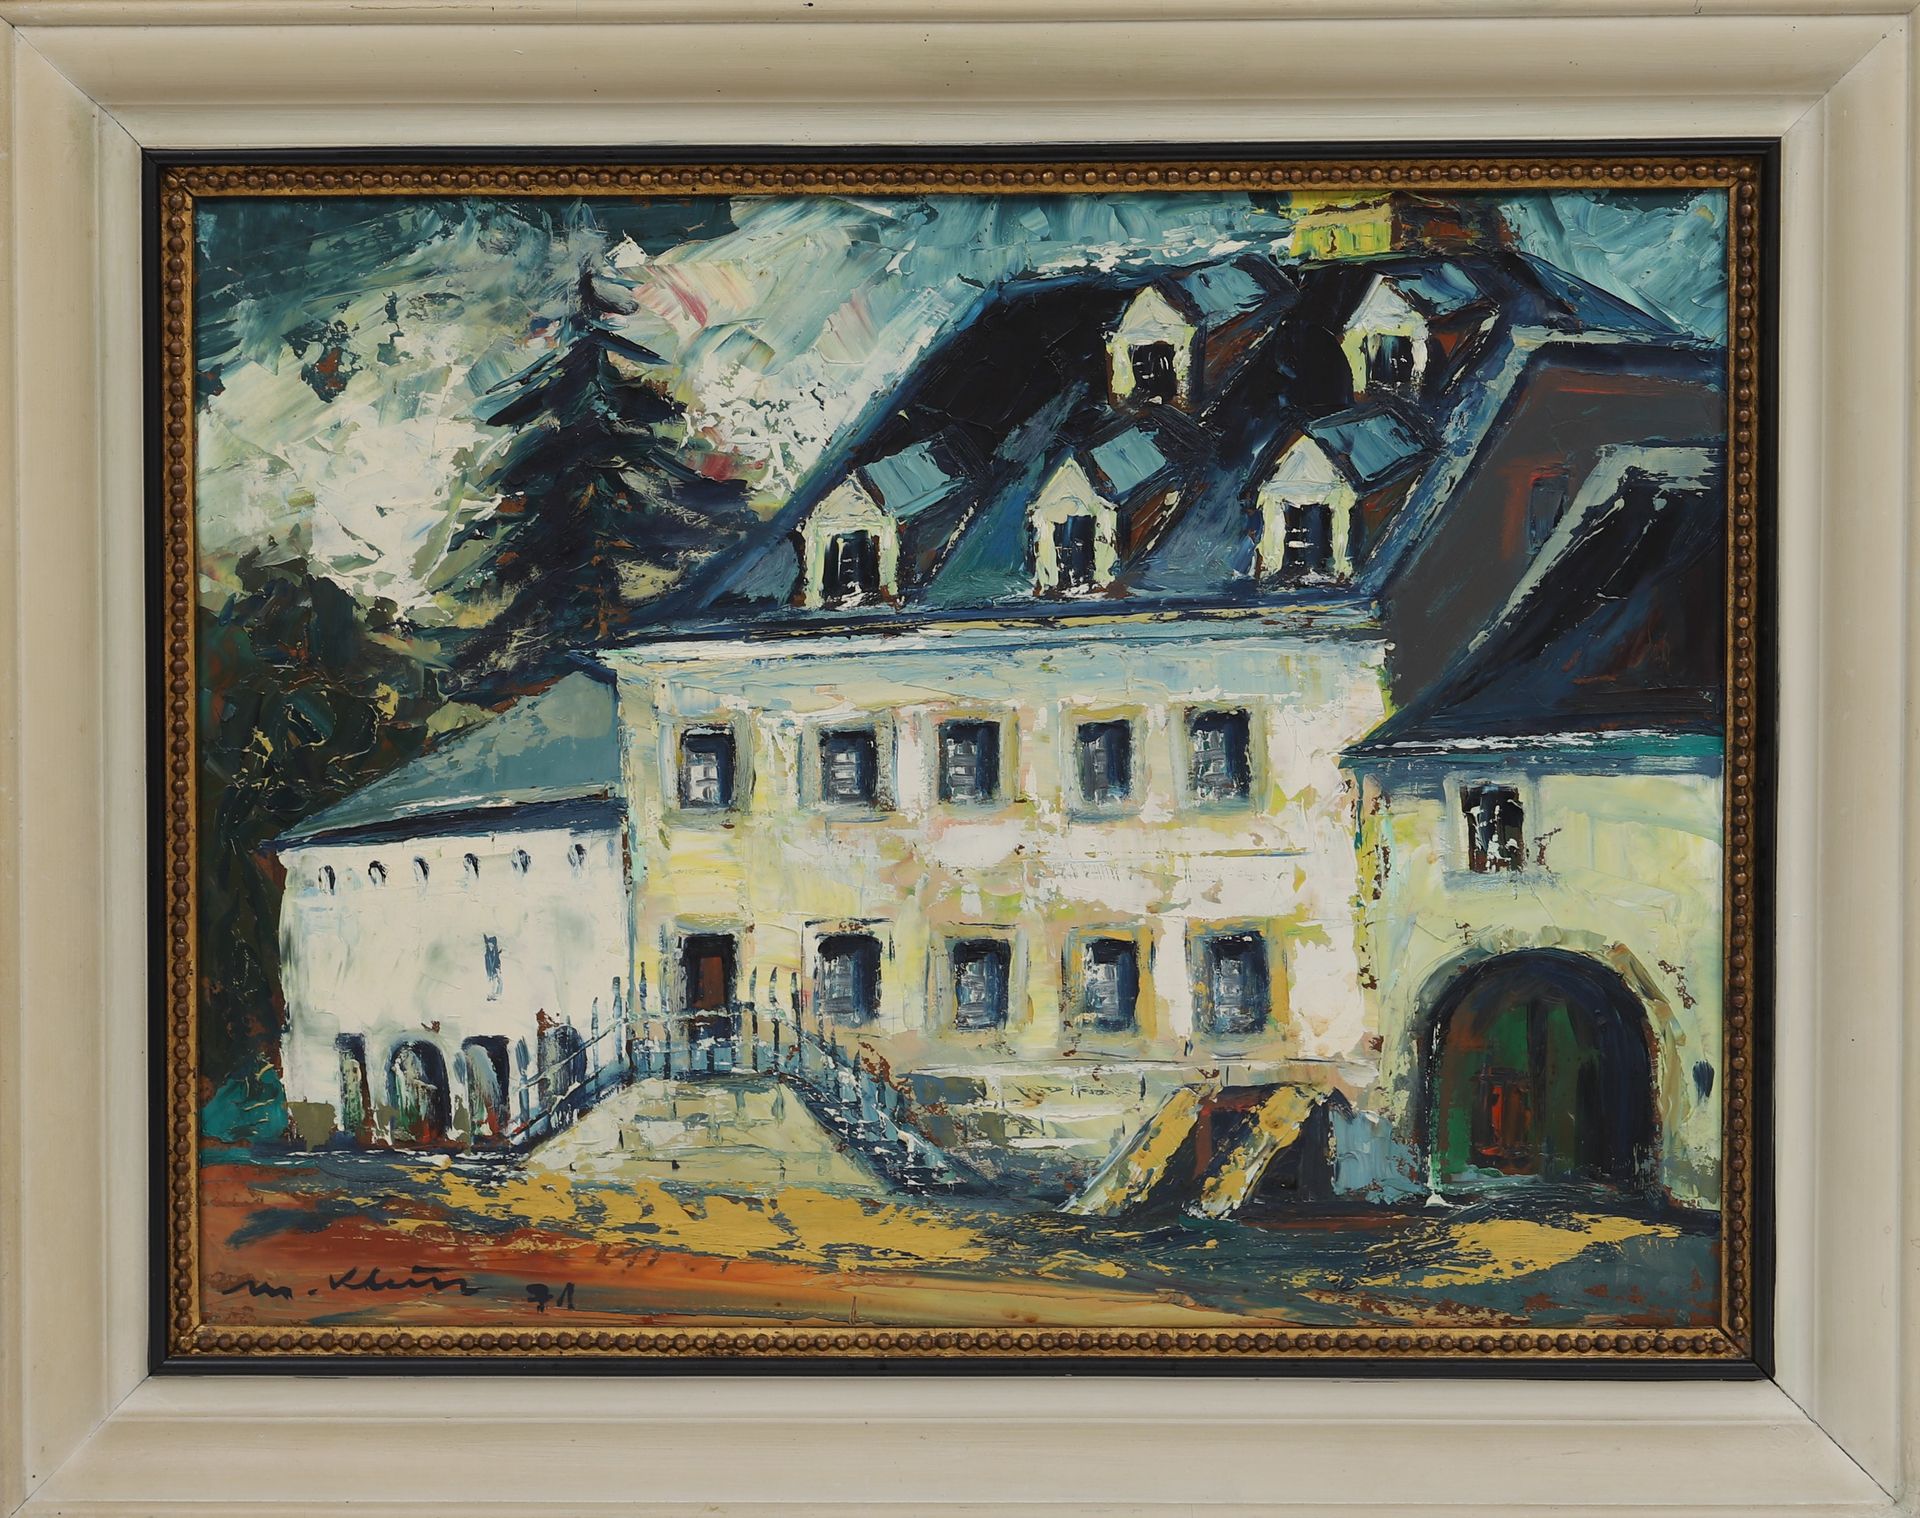 Null Misch Klein (1919-1993)

Artiste peintre luxembourgeois

Huile sur toile si&hellip;